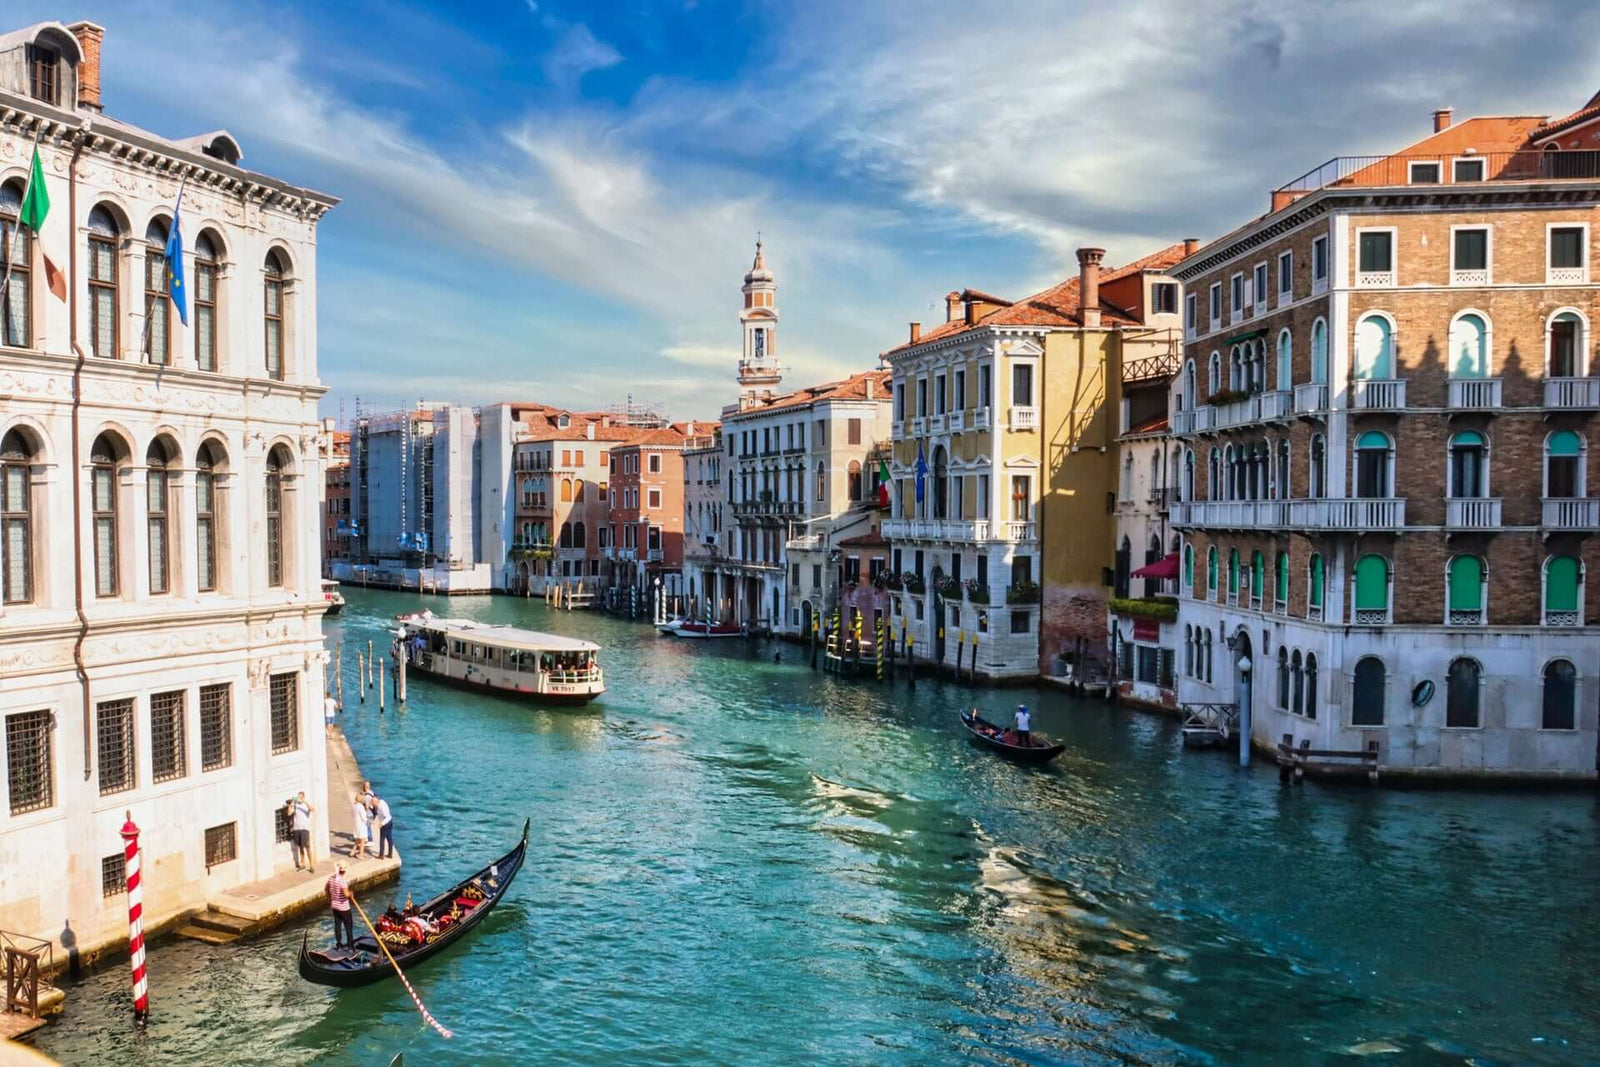 Blick auf den Canale Grande in Venedig, wo die Luxusschuhe von Tagliascarpe hergestellt werden